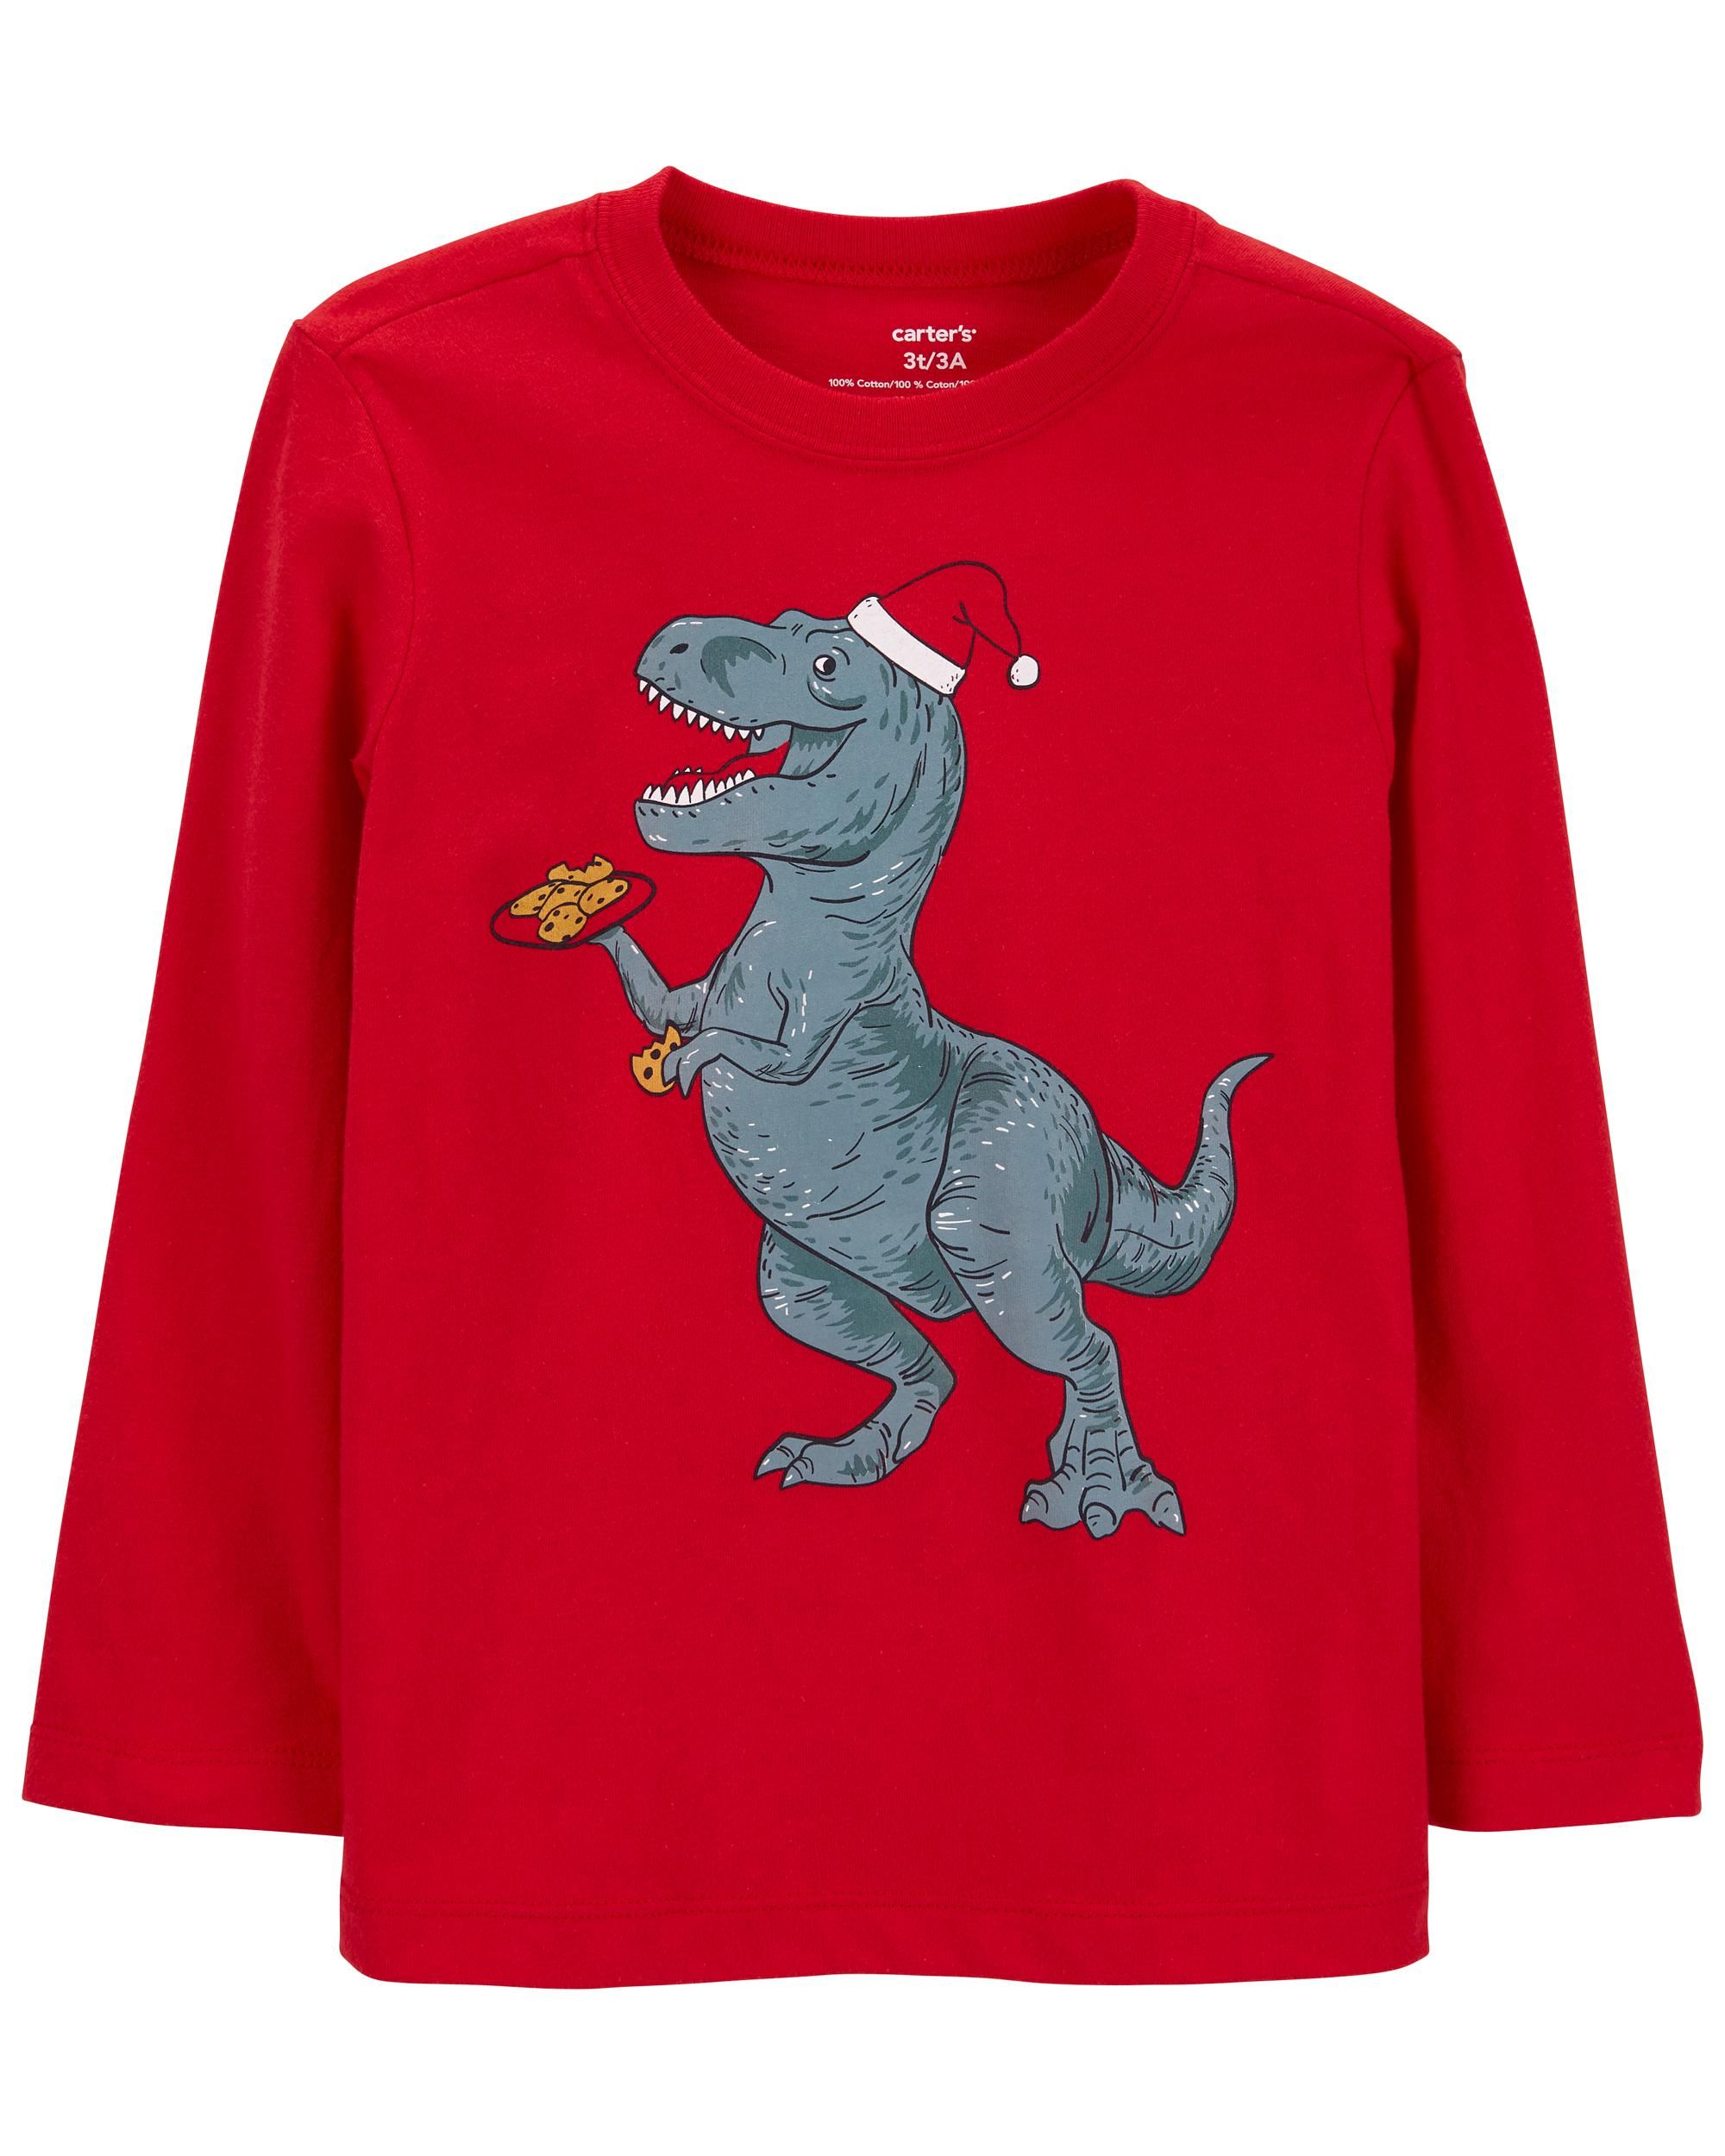 Toddler Christmas Dinosaur Jersey Tee | Carter's